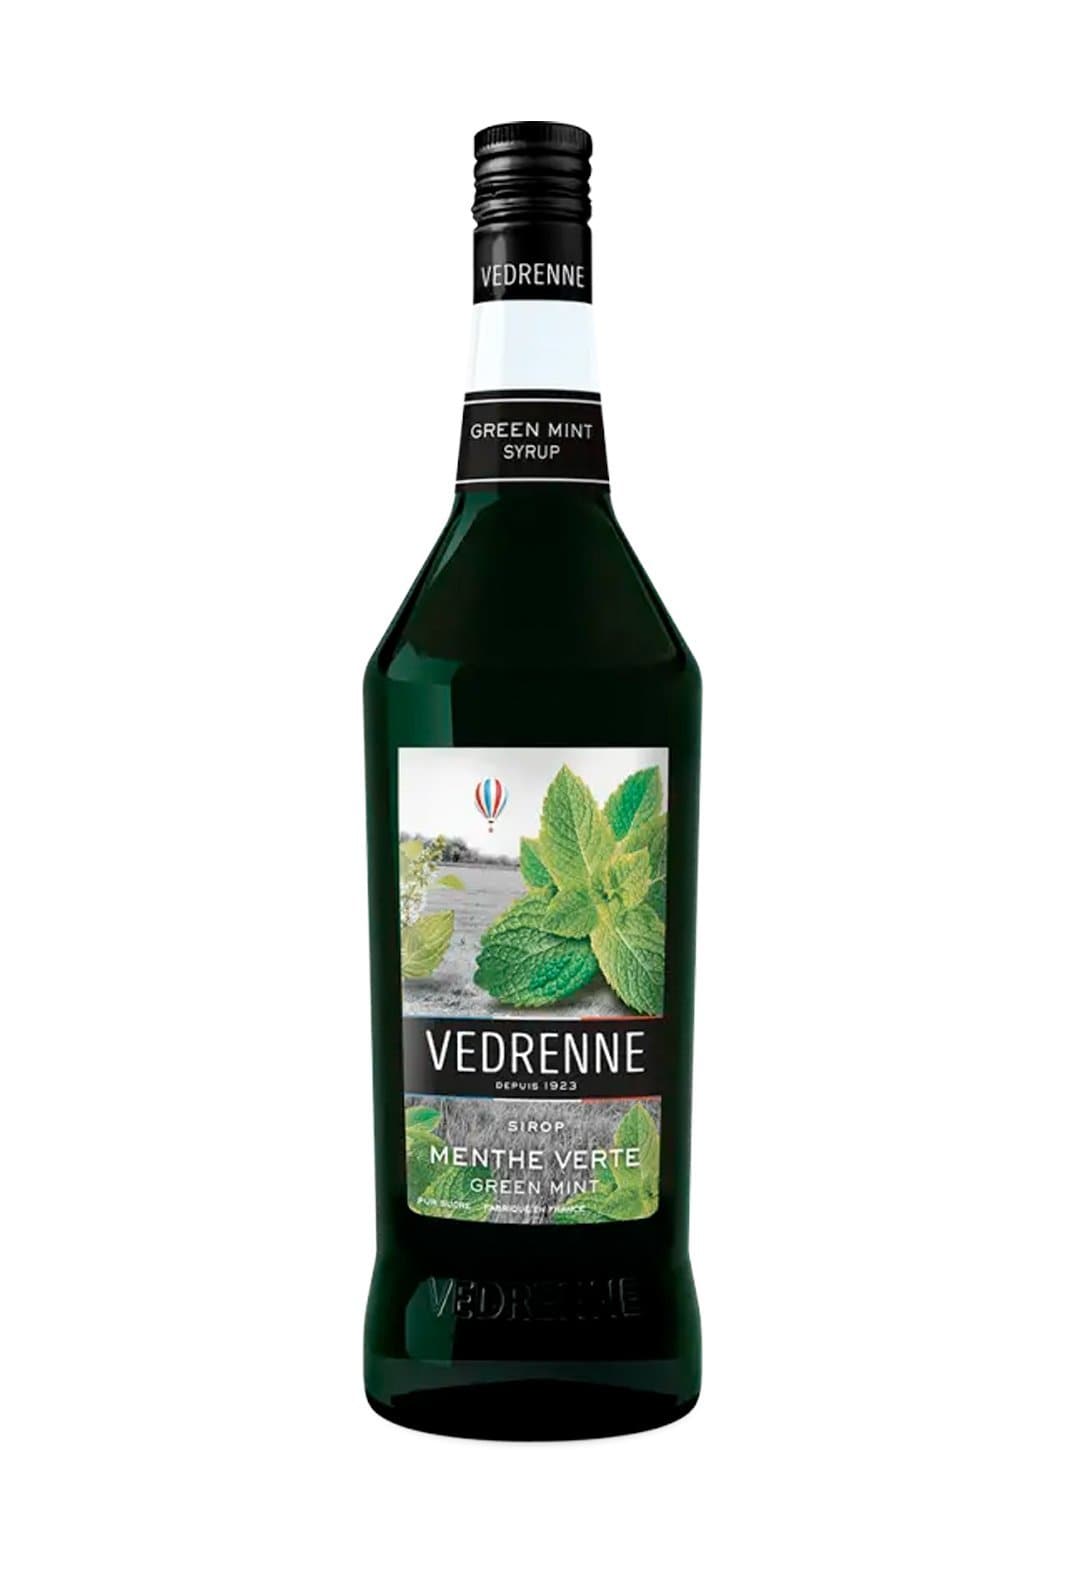 Vedrenne Green Mint (Menthe verte) Syrup 1000ml | Liqueurs | Shop online at Spirits of France